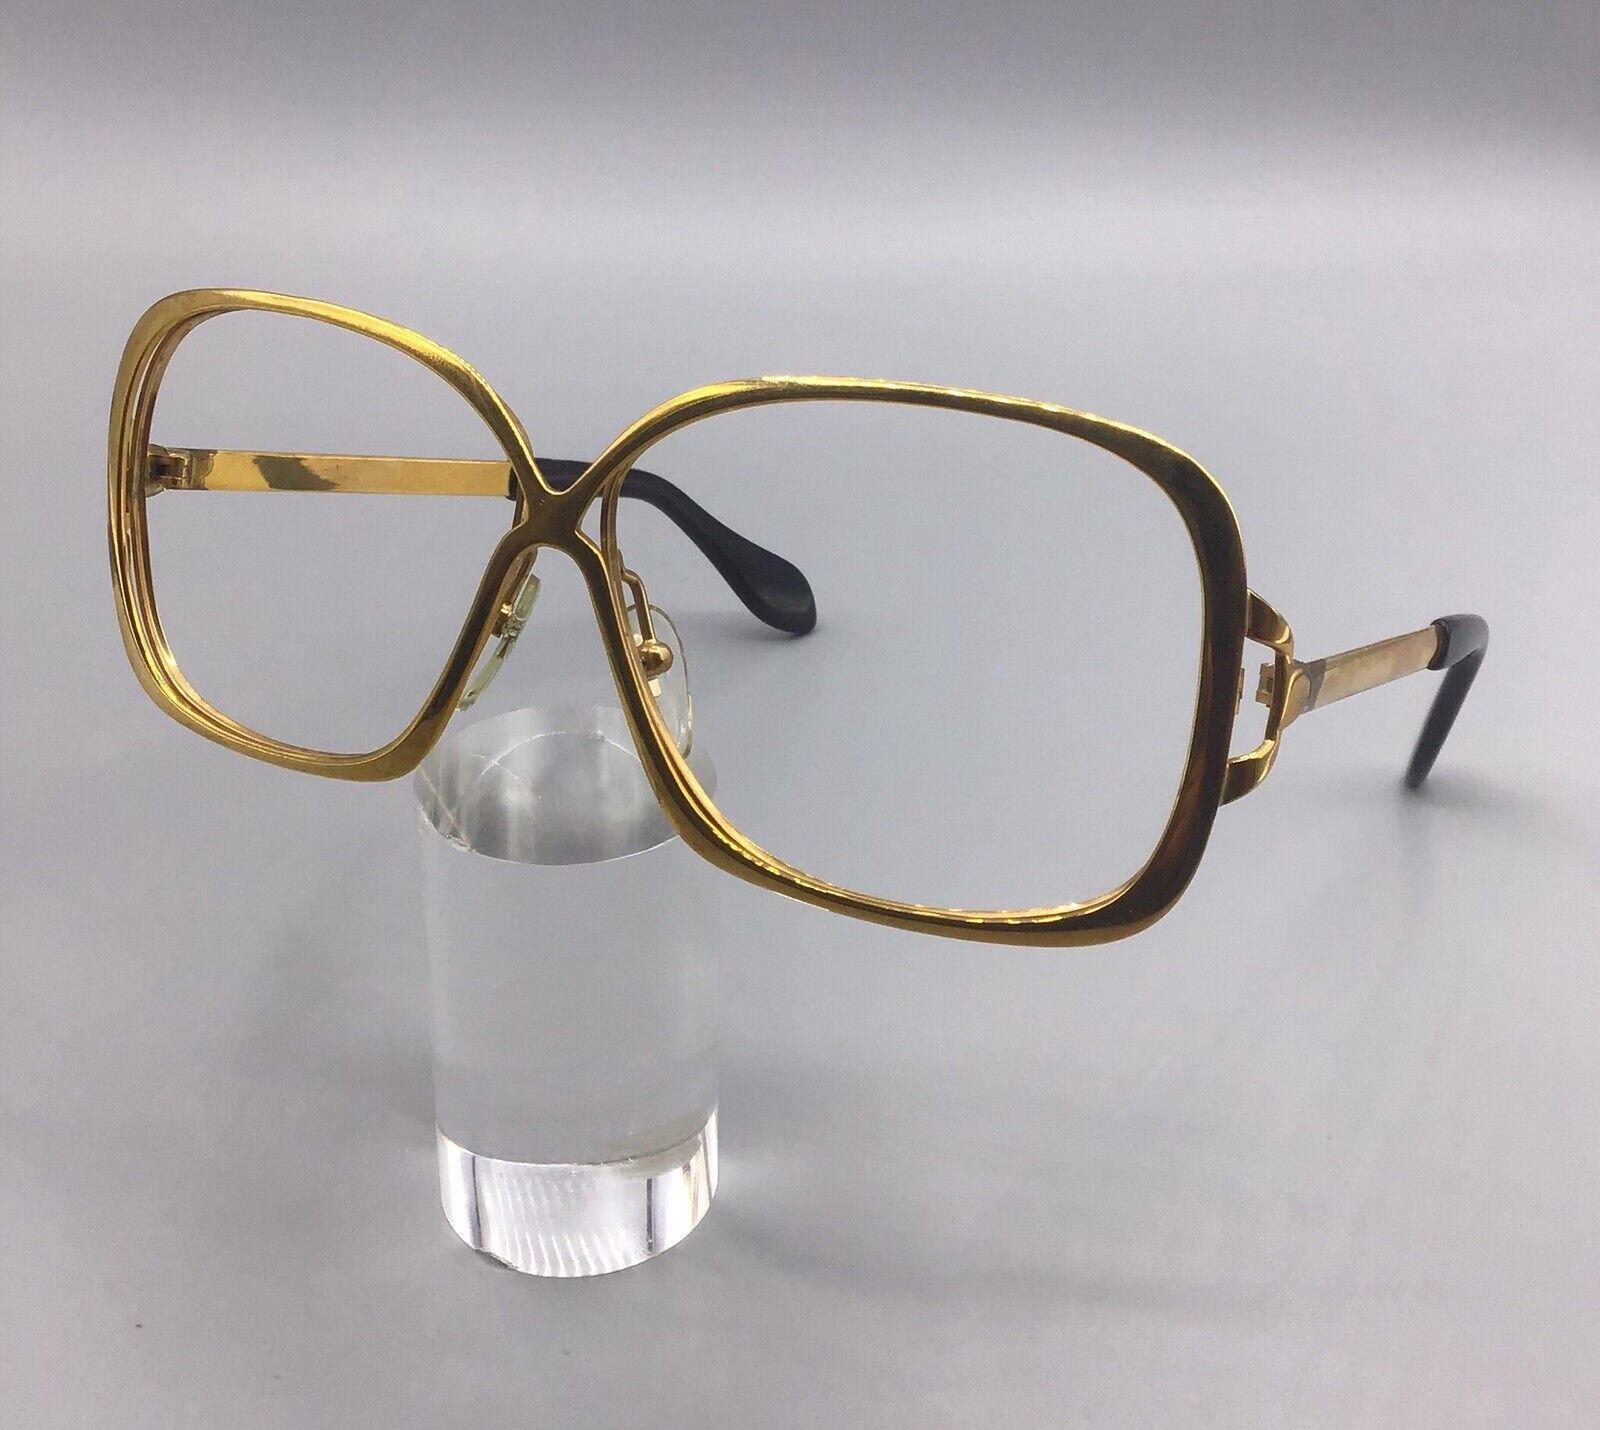 Silhouette Gold Laminated Eyewear Occhiale Vintage Brillen